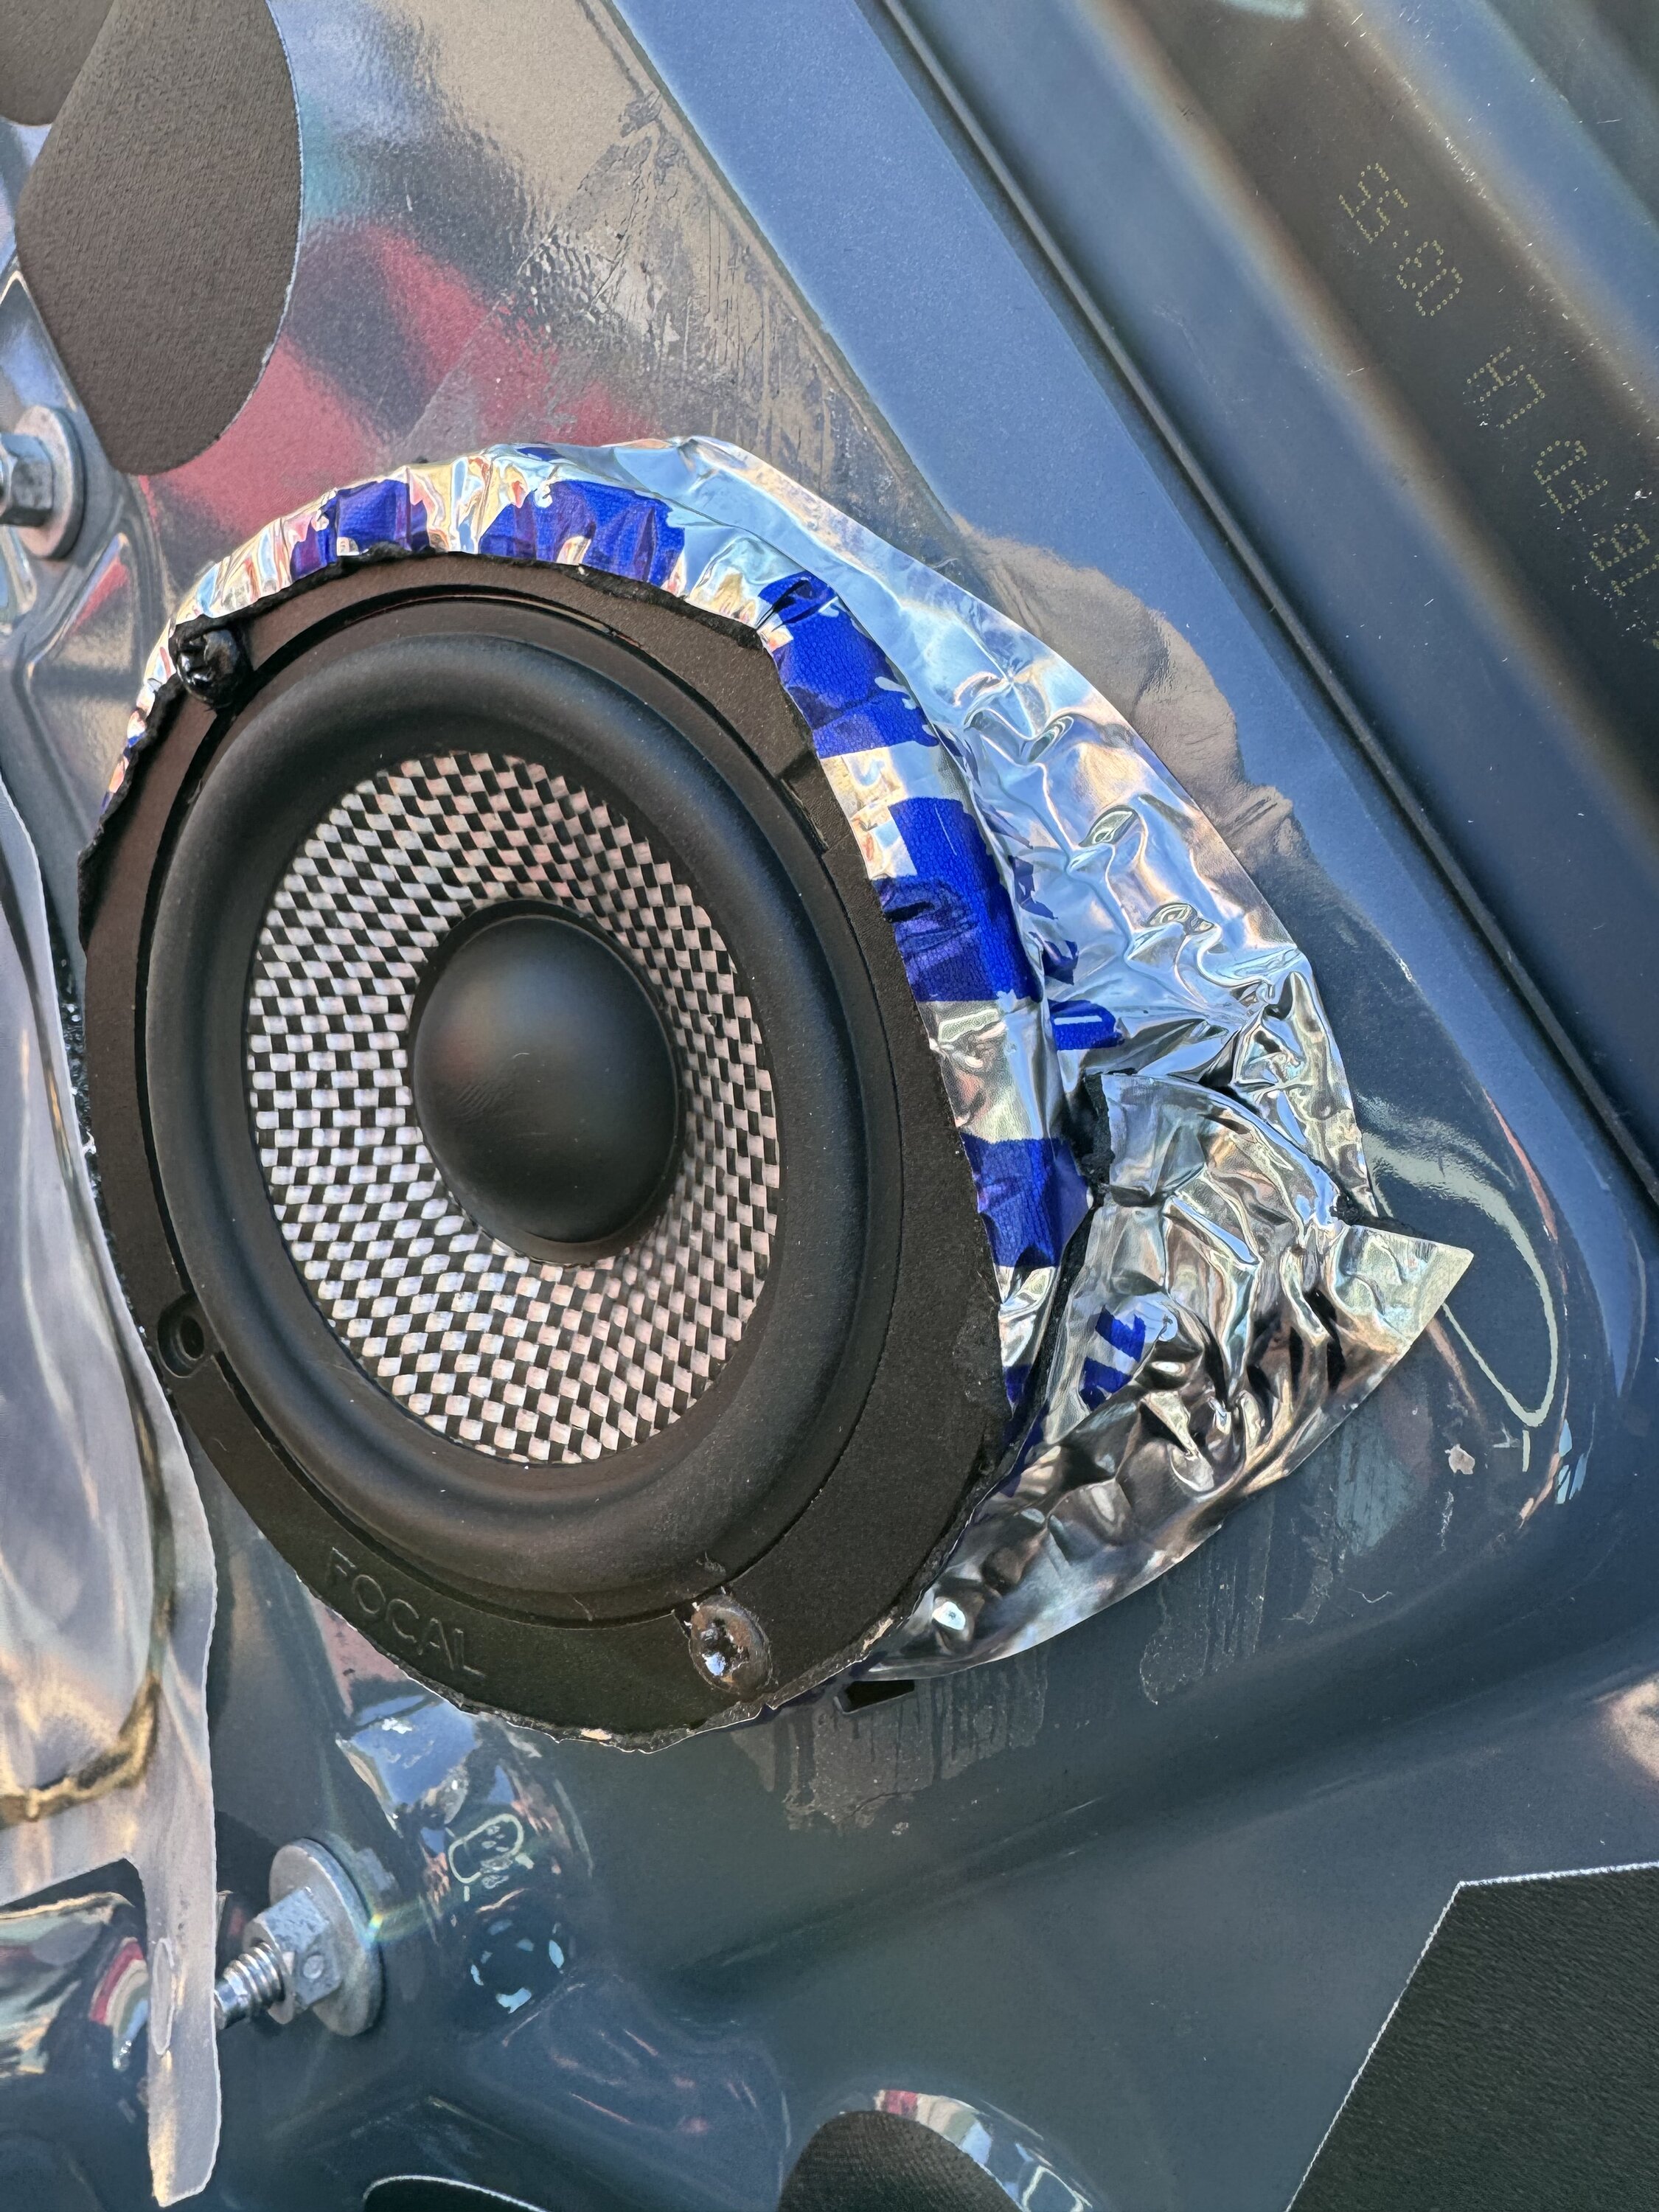 S650 Mustang Removed Door Panels for Speaker Upgrade - DIY Writeup IMG_0616